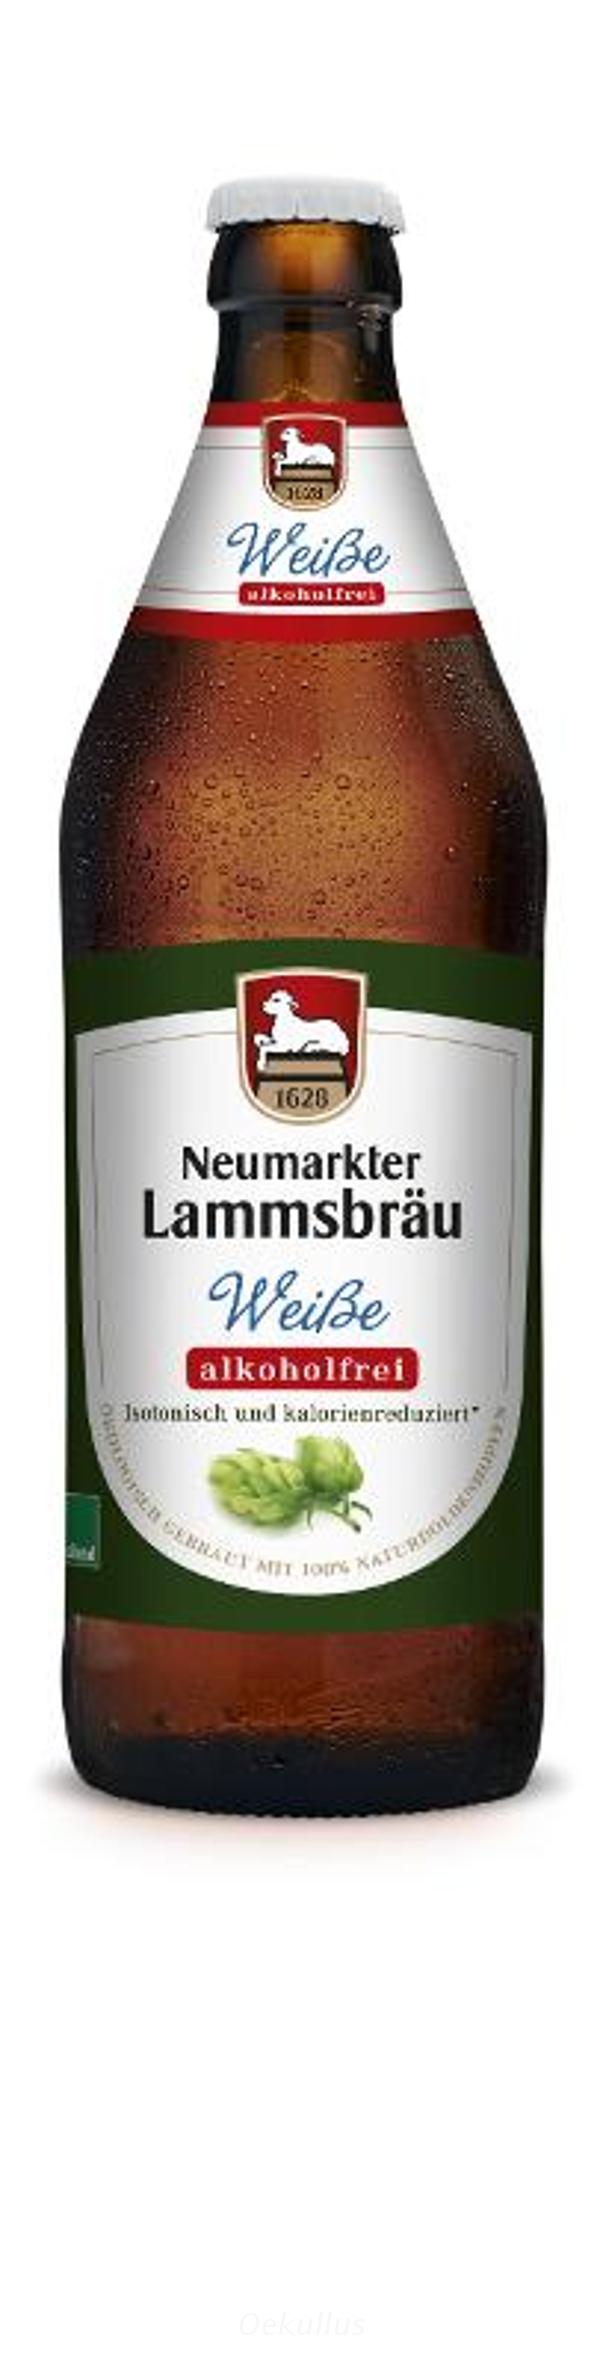 Produktfoto zu Weiße Lammsbräu alkoholfrei Flasche